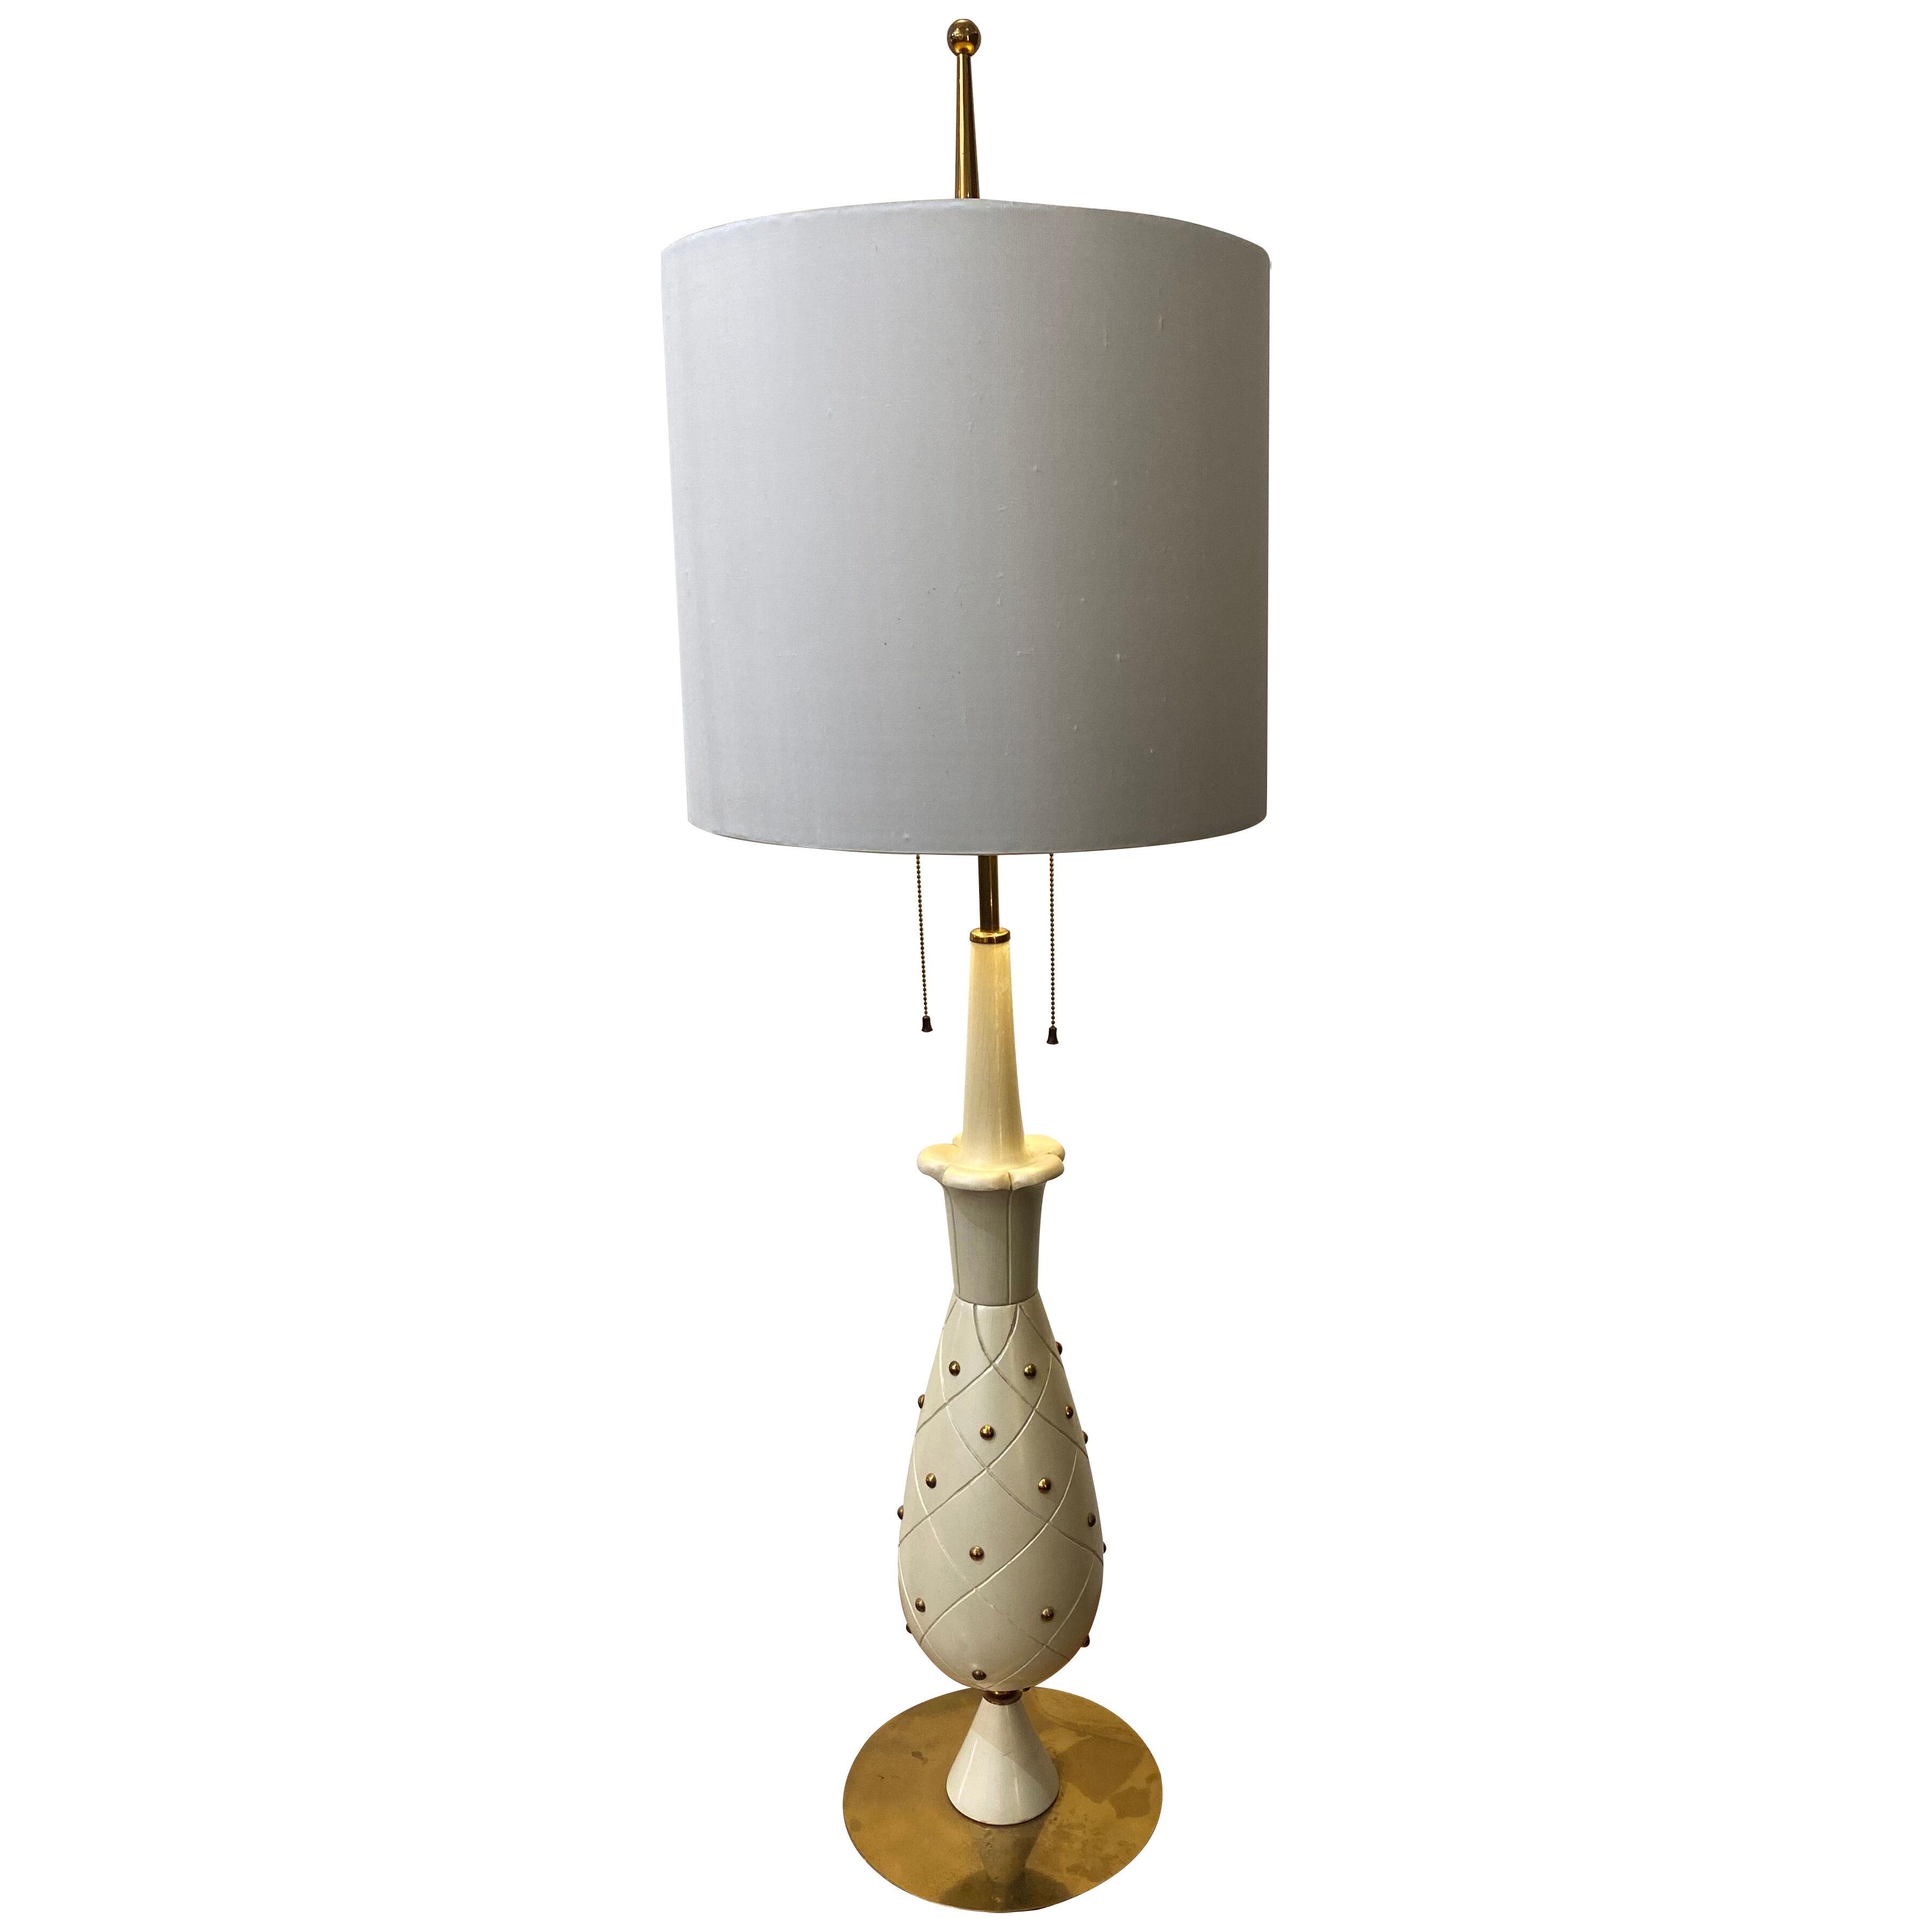 Stilnovo Tall Table Lamp